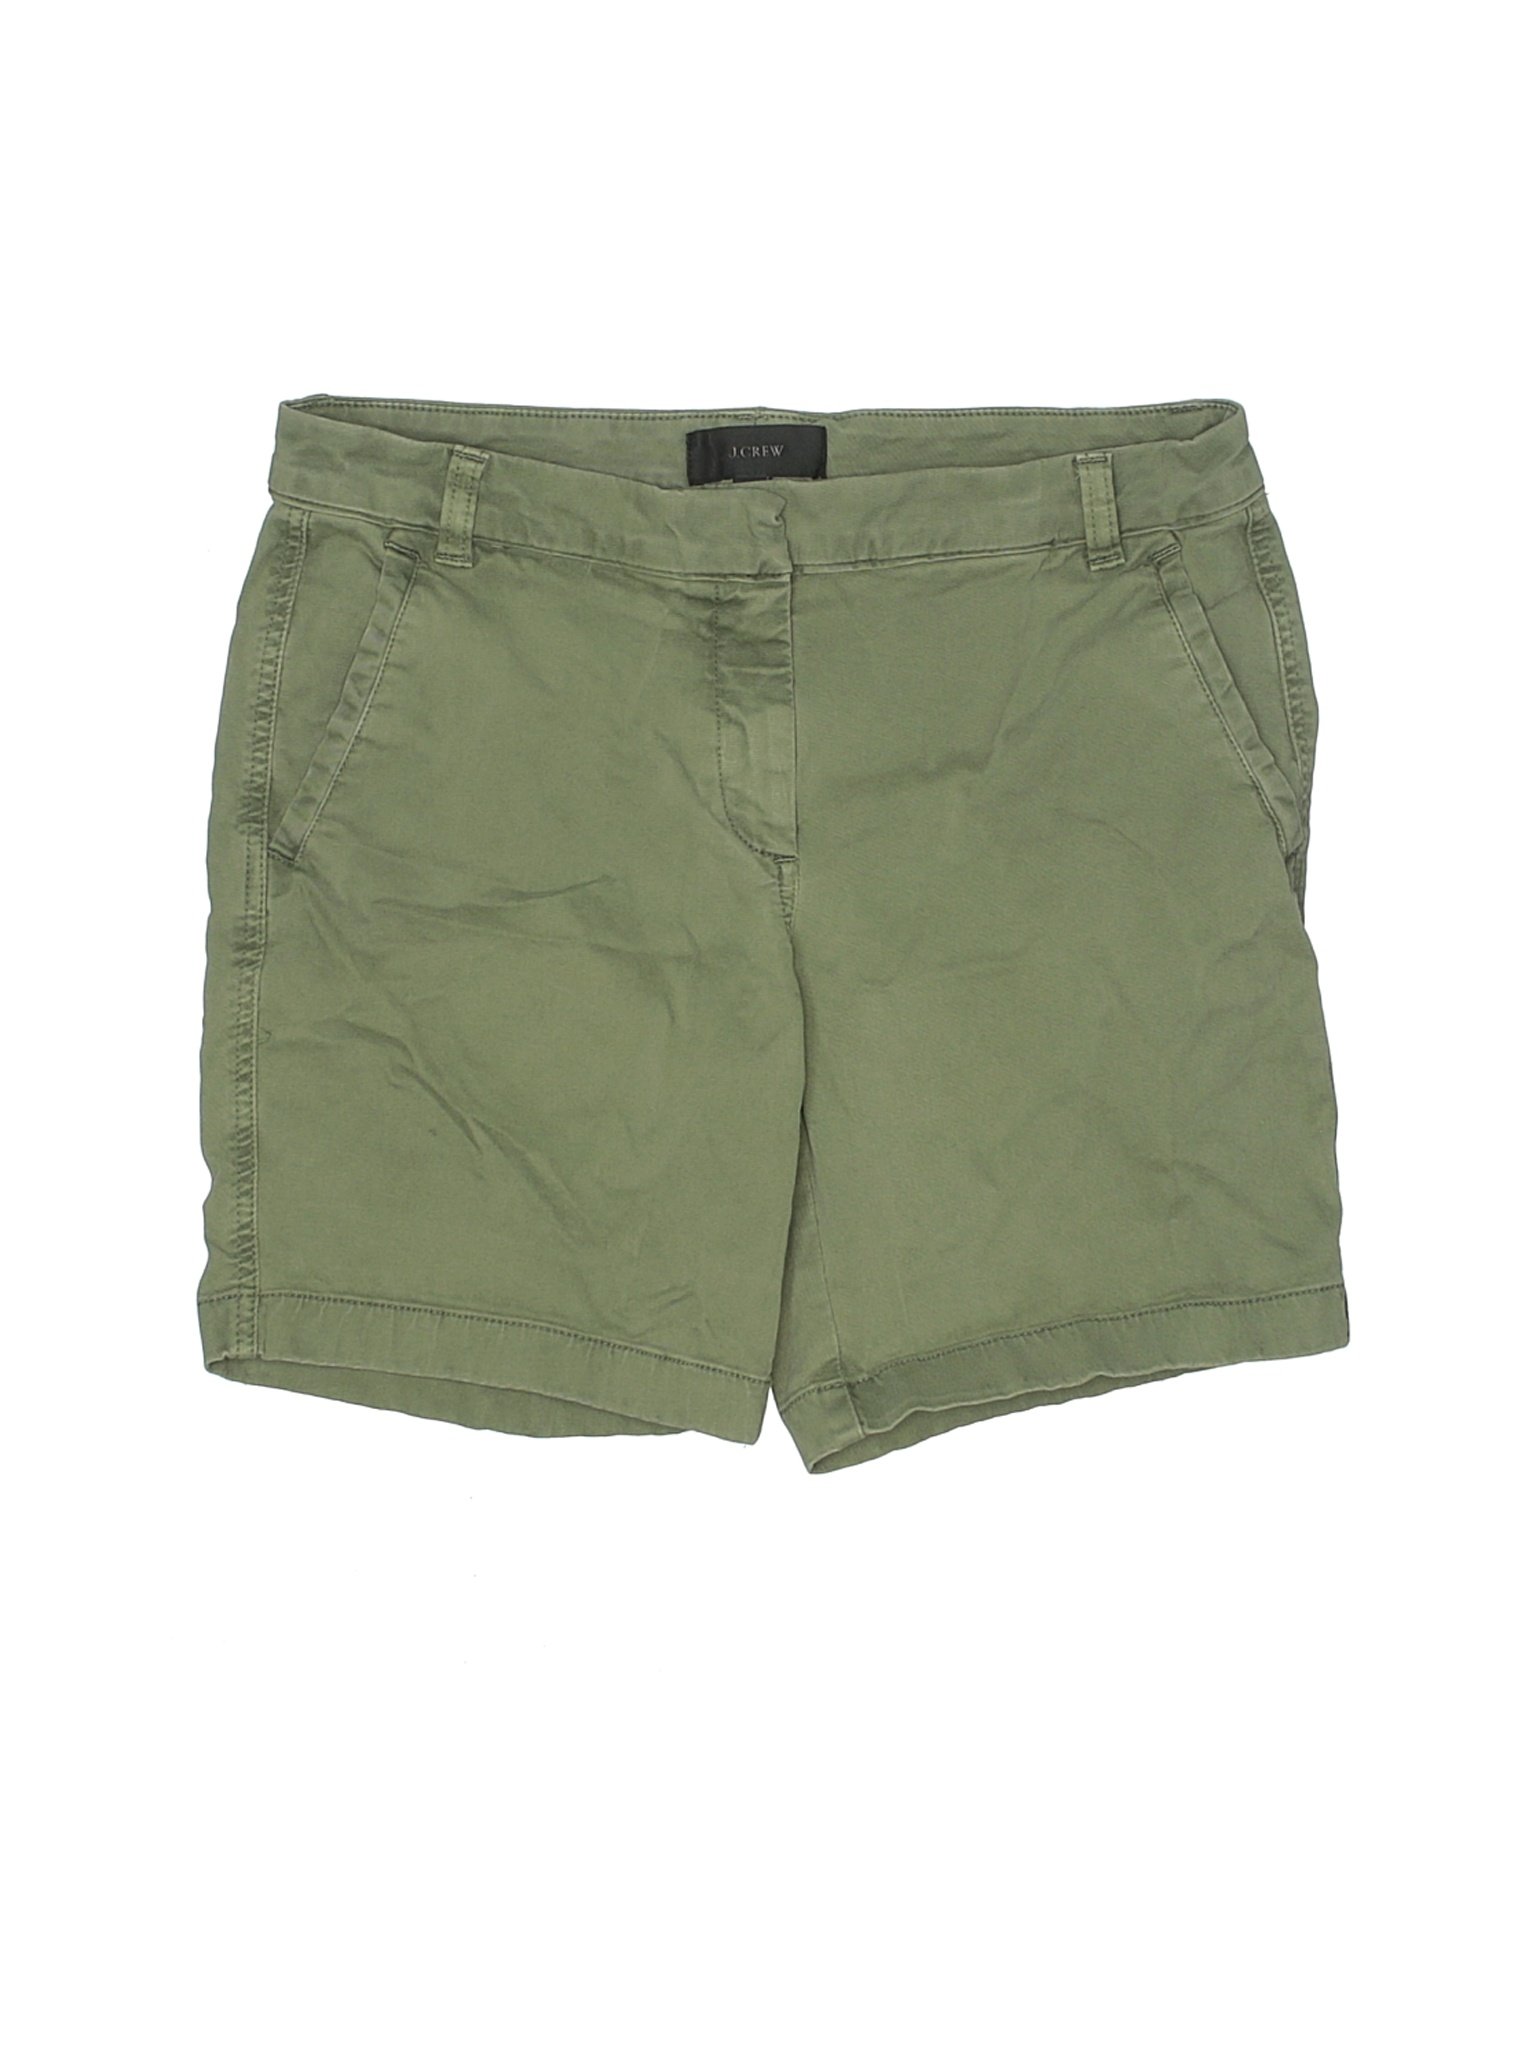 J.Crew Women Green Khaki Shorts 6 | eBay